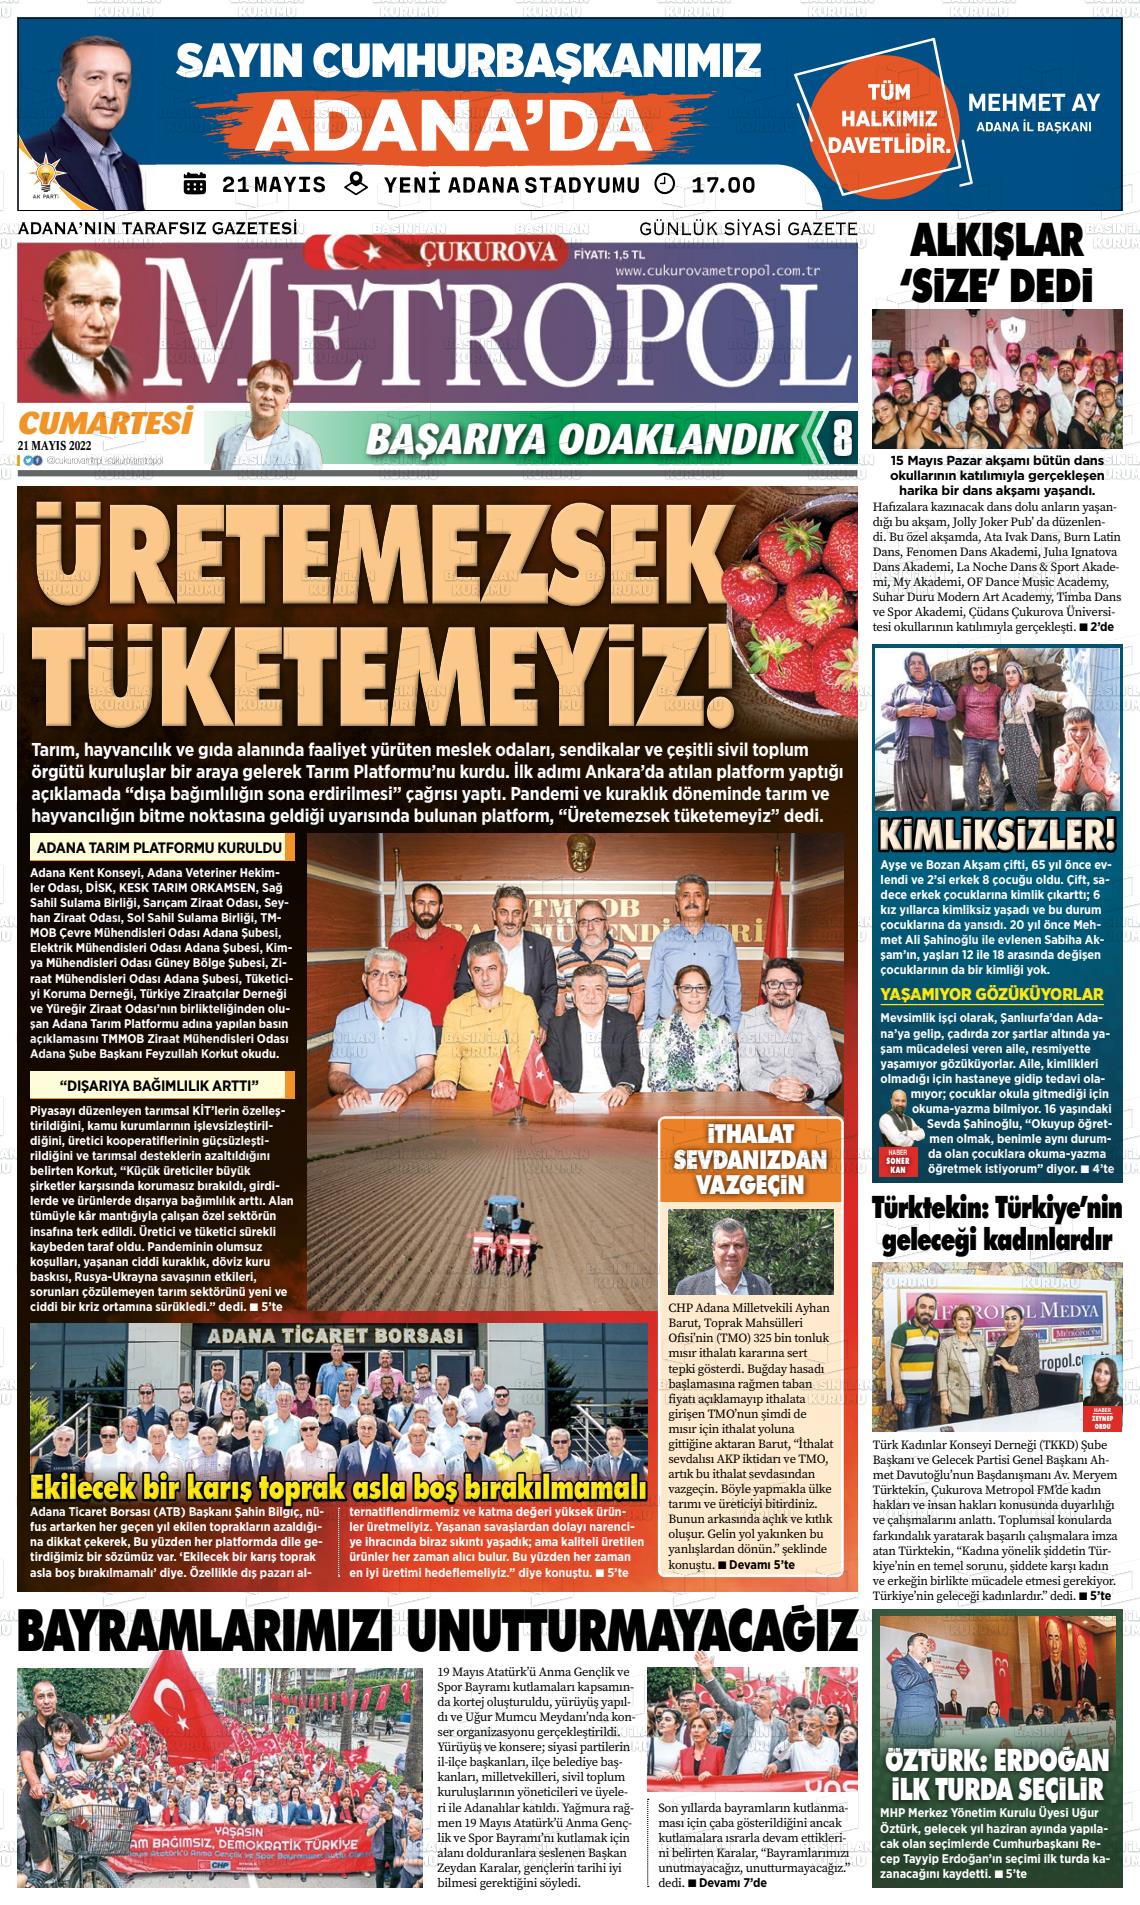 21 Mayıs 2022 Çukurova Metropol Gazete Manşeti